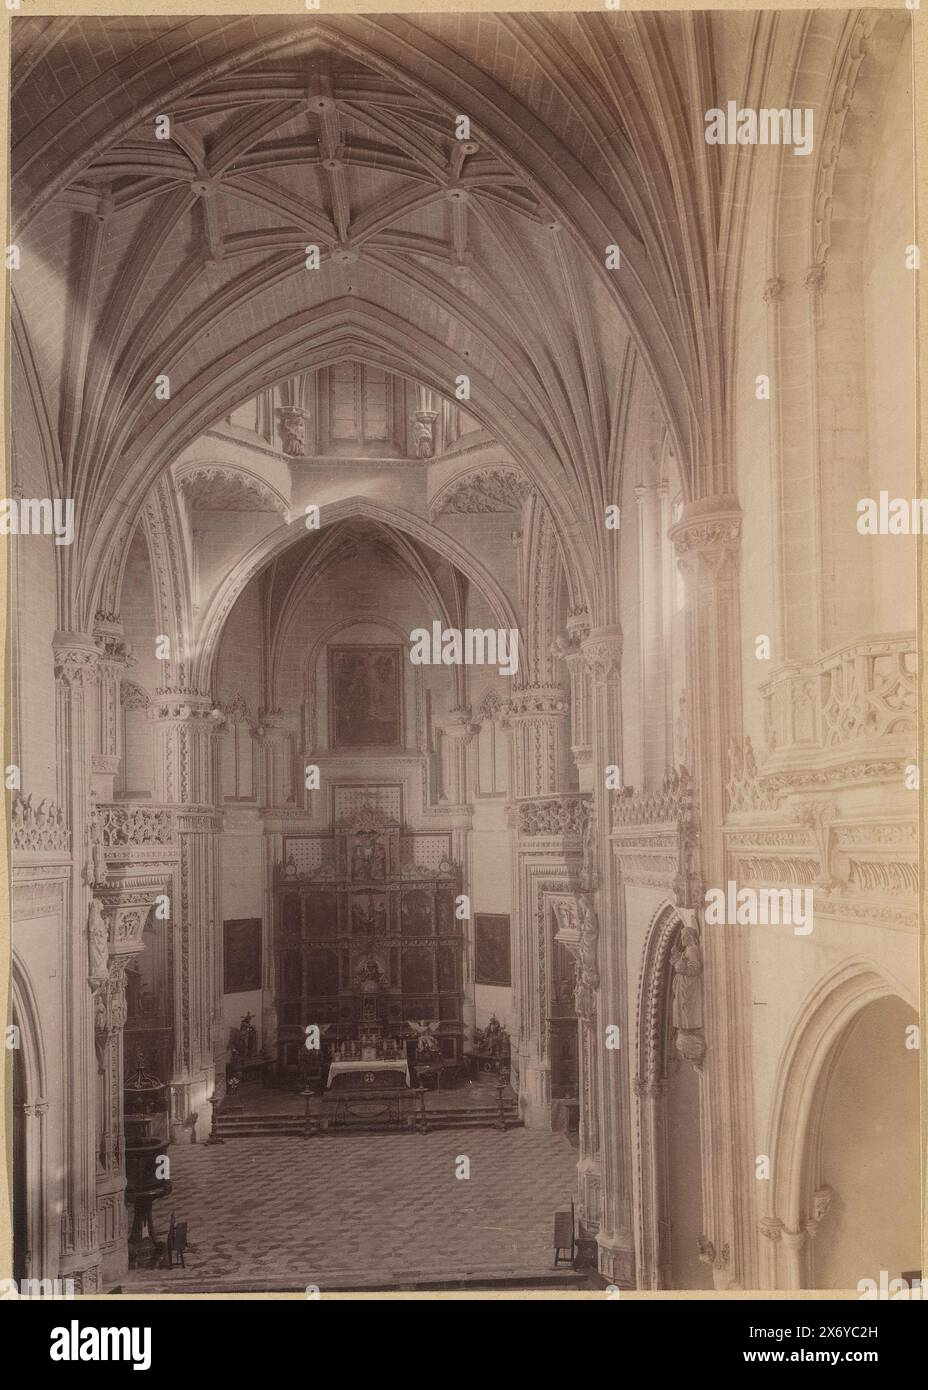 Innenraum des Convento de San Juan de los Reyes in Toledo, dieses Foto ist Teil eines Albums., Foto, anonym, Toledo, 1851 - ca. 1890, Papier, Albumendruck, Höhe, 221 mm x Breite, 157 mm Stockfoto